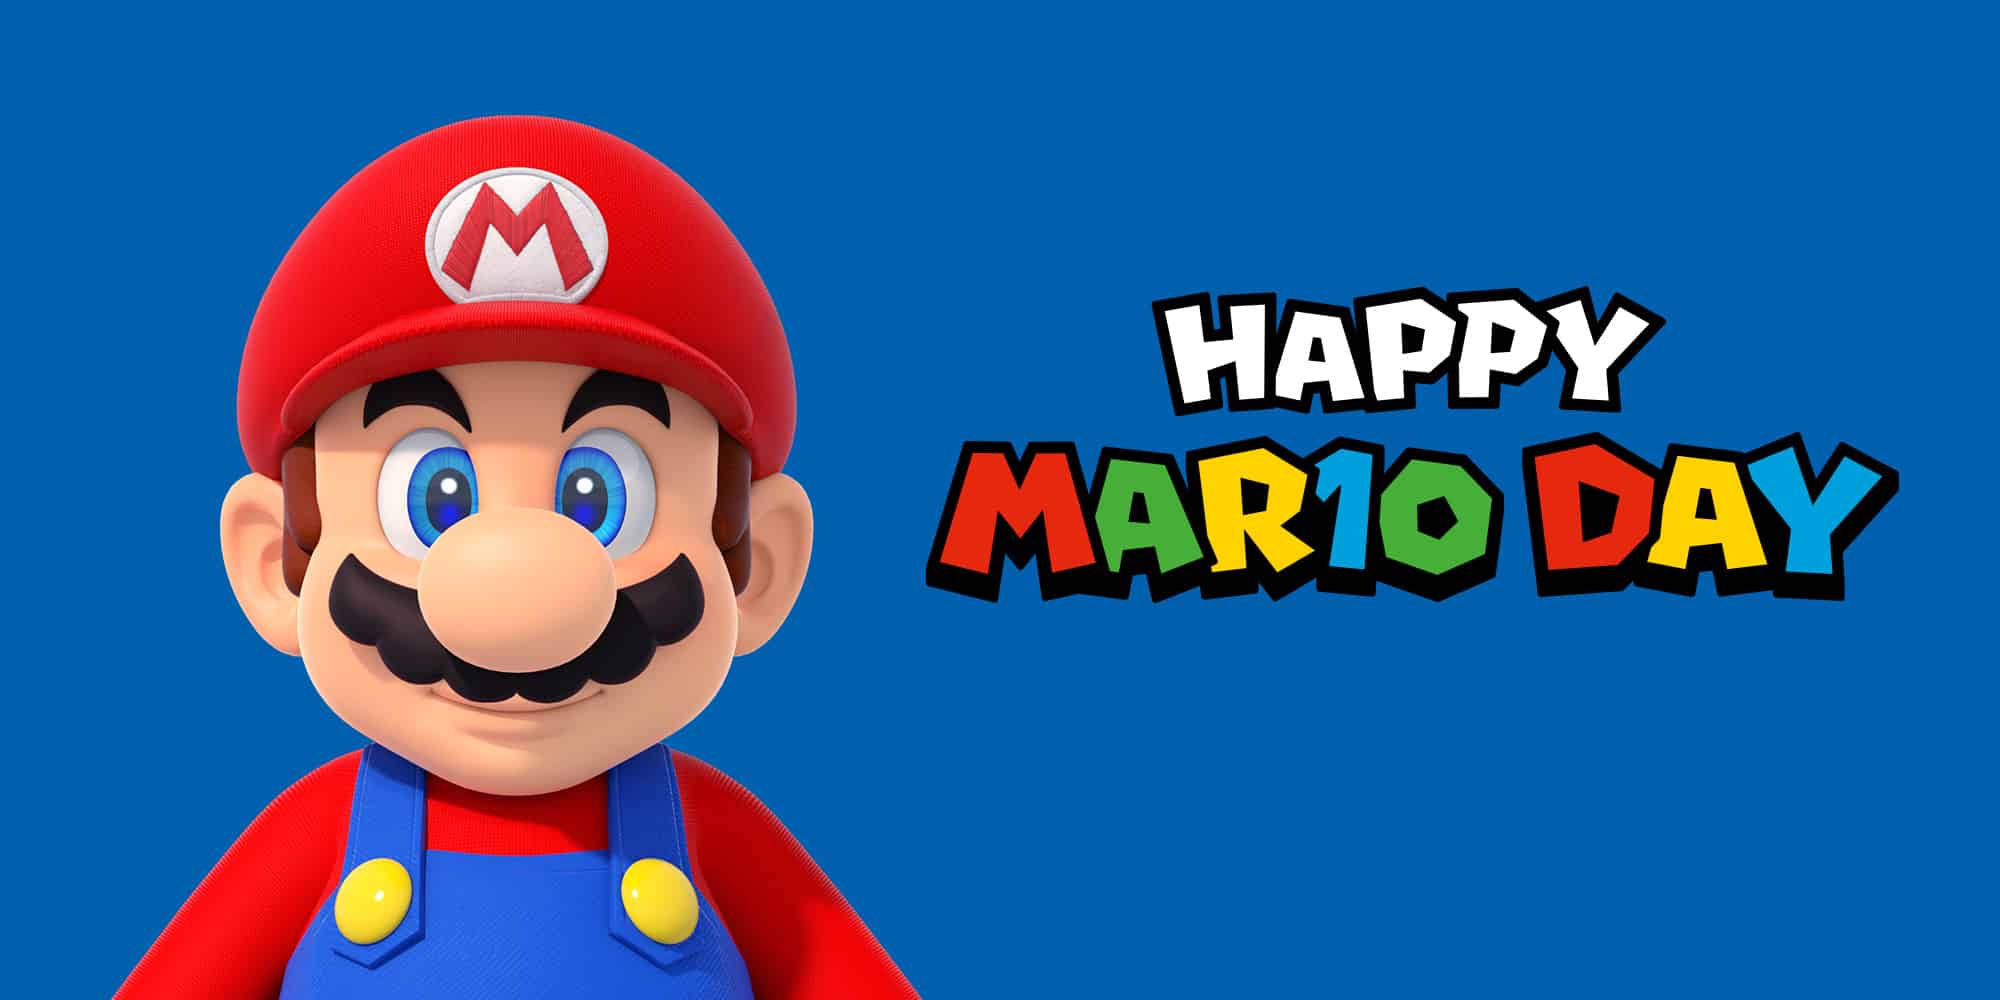 Mario day. День Марио (mar10 Day). Марио с днем рождения.